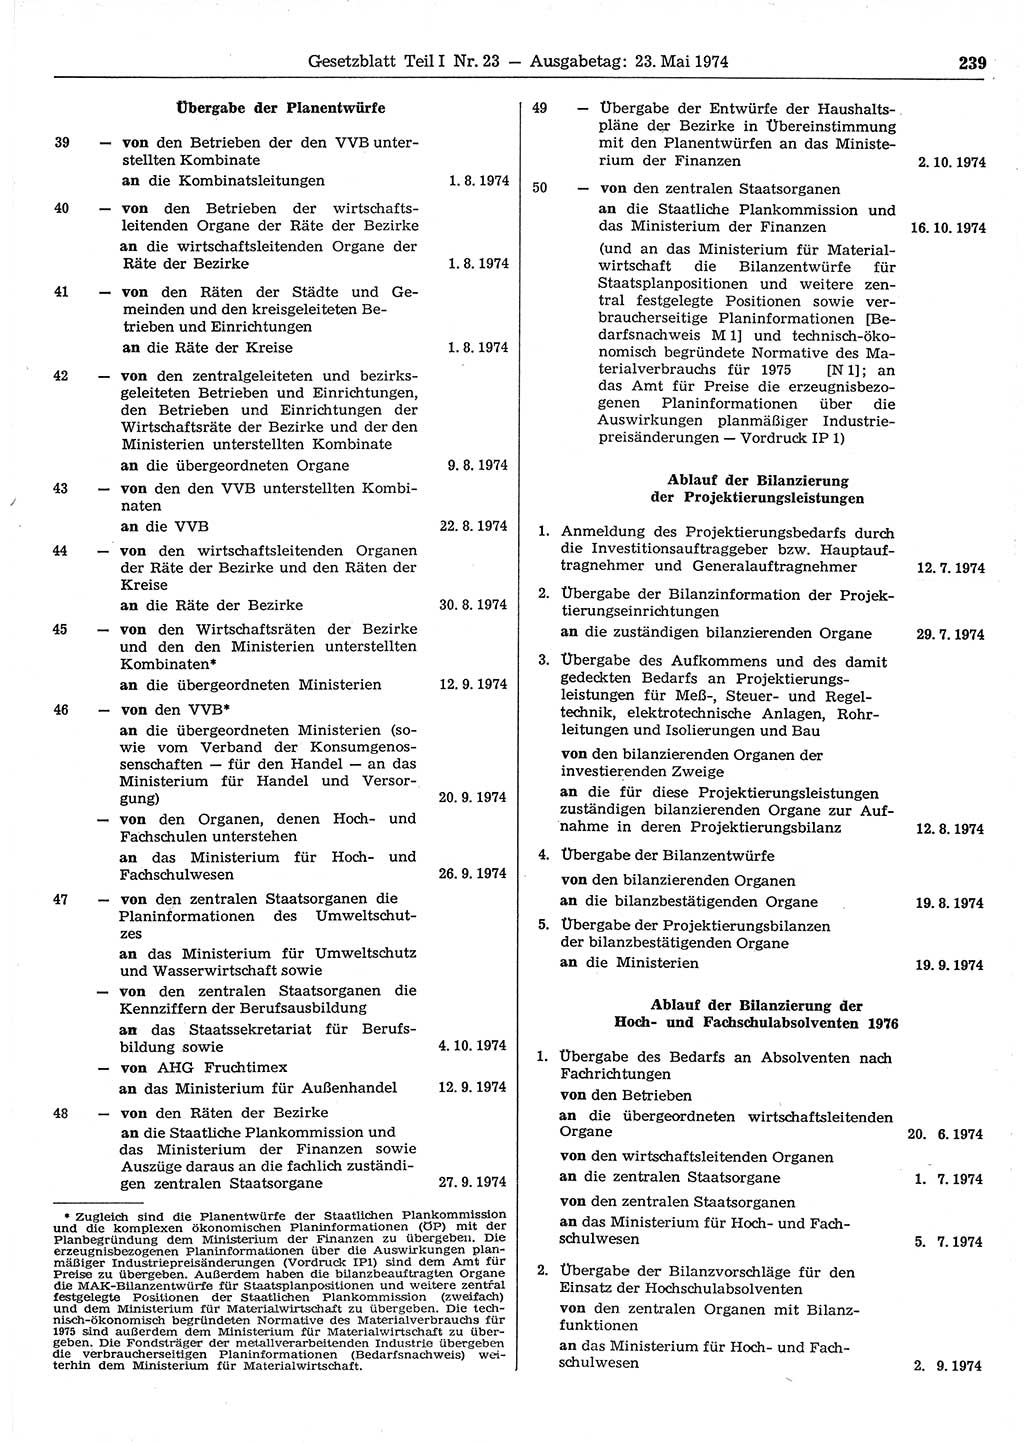 Gesetzblatt (GBl.) der Deutschen Demokratischen Republik (DDR) Teil Ⅰ 1974, Seite 239 (GBl. DDR Ⅰ 1974, S. 239)